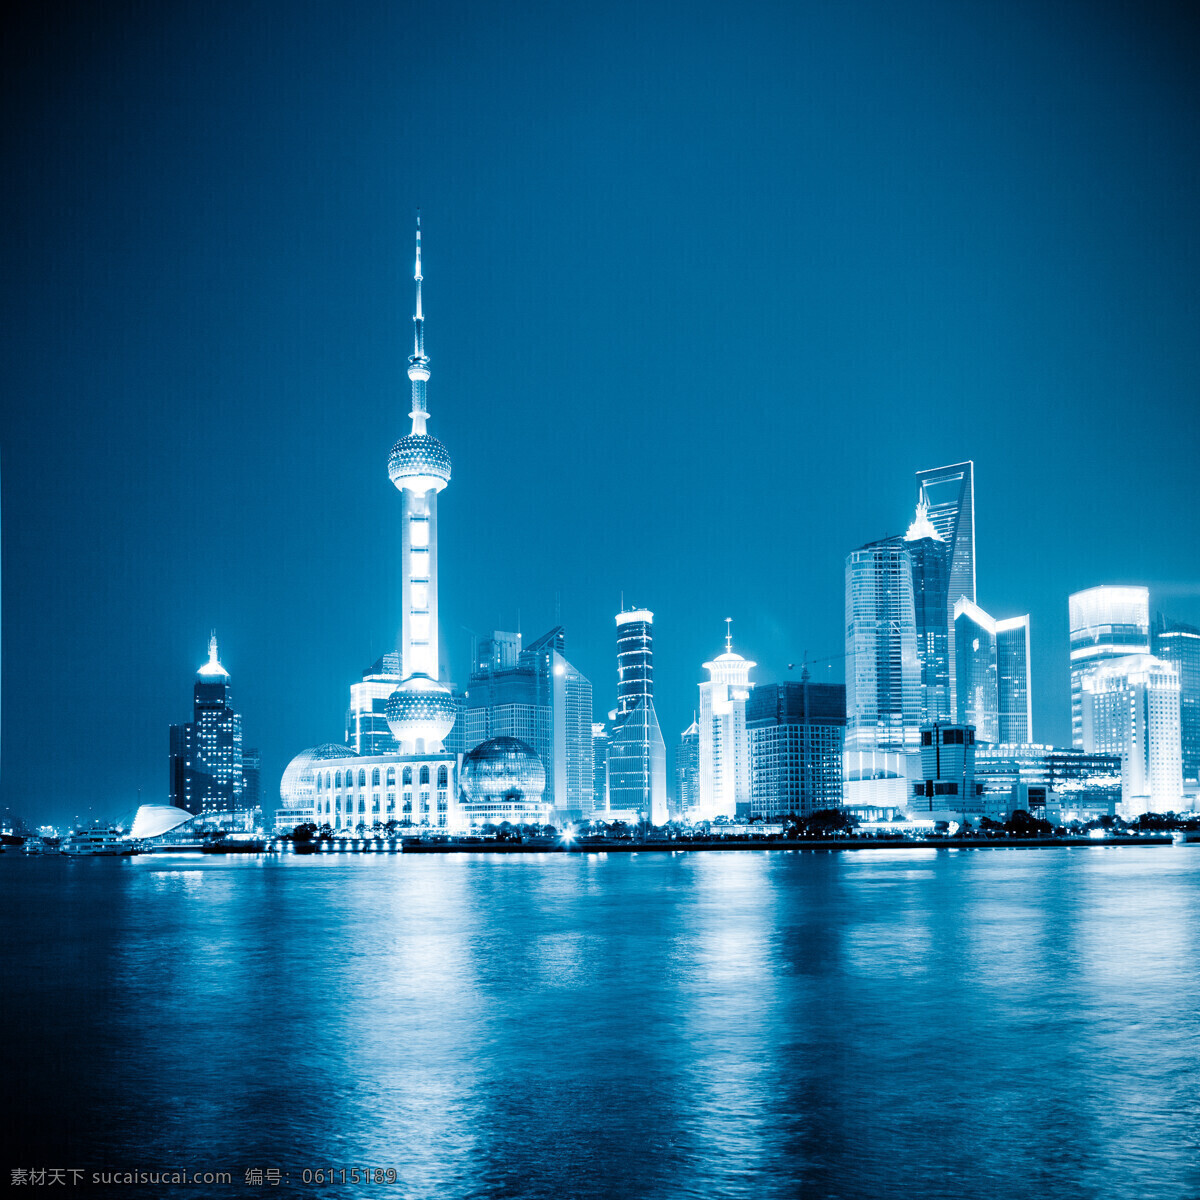 美丽 上海 夜景 上海夜景 城市风光 美丽城市夜景 美丽城市风景 高楼大厦 繁华都市 环境家居